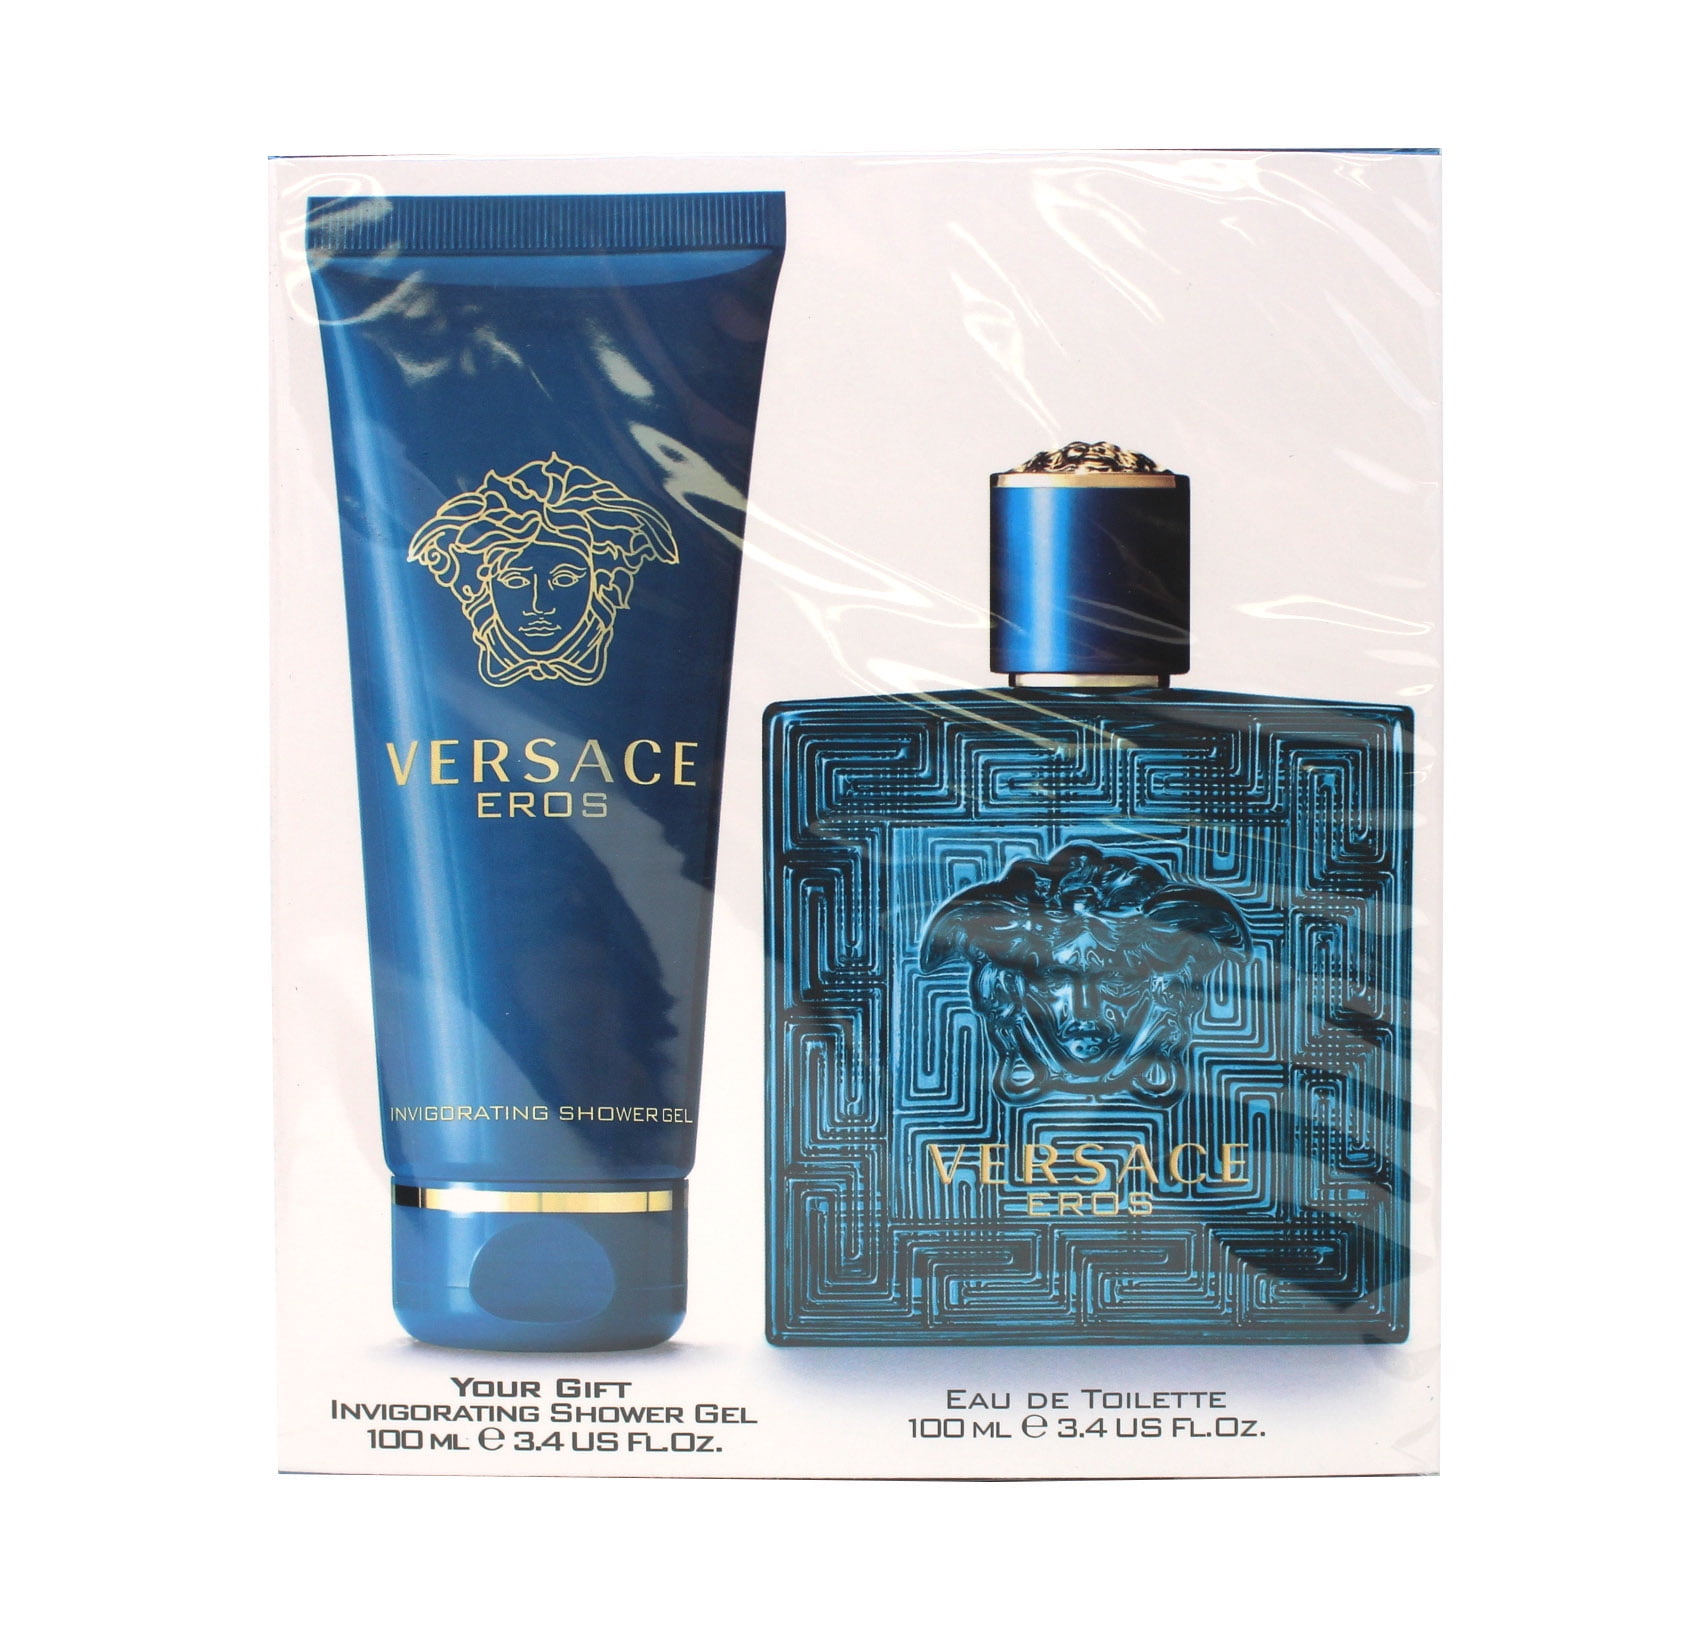  Chanel Fragrance Antaeus Eau De Toilette Spray For Men  100Ml/3.3Oz : Beauty & Personal Care